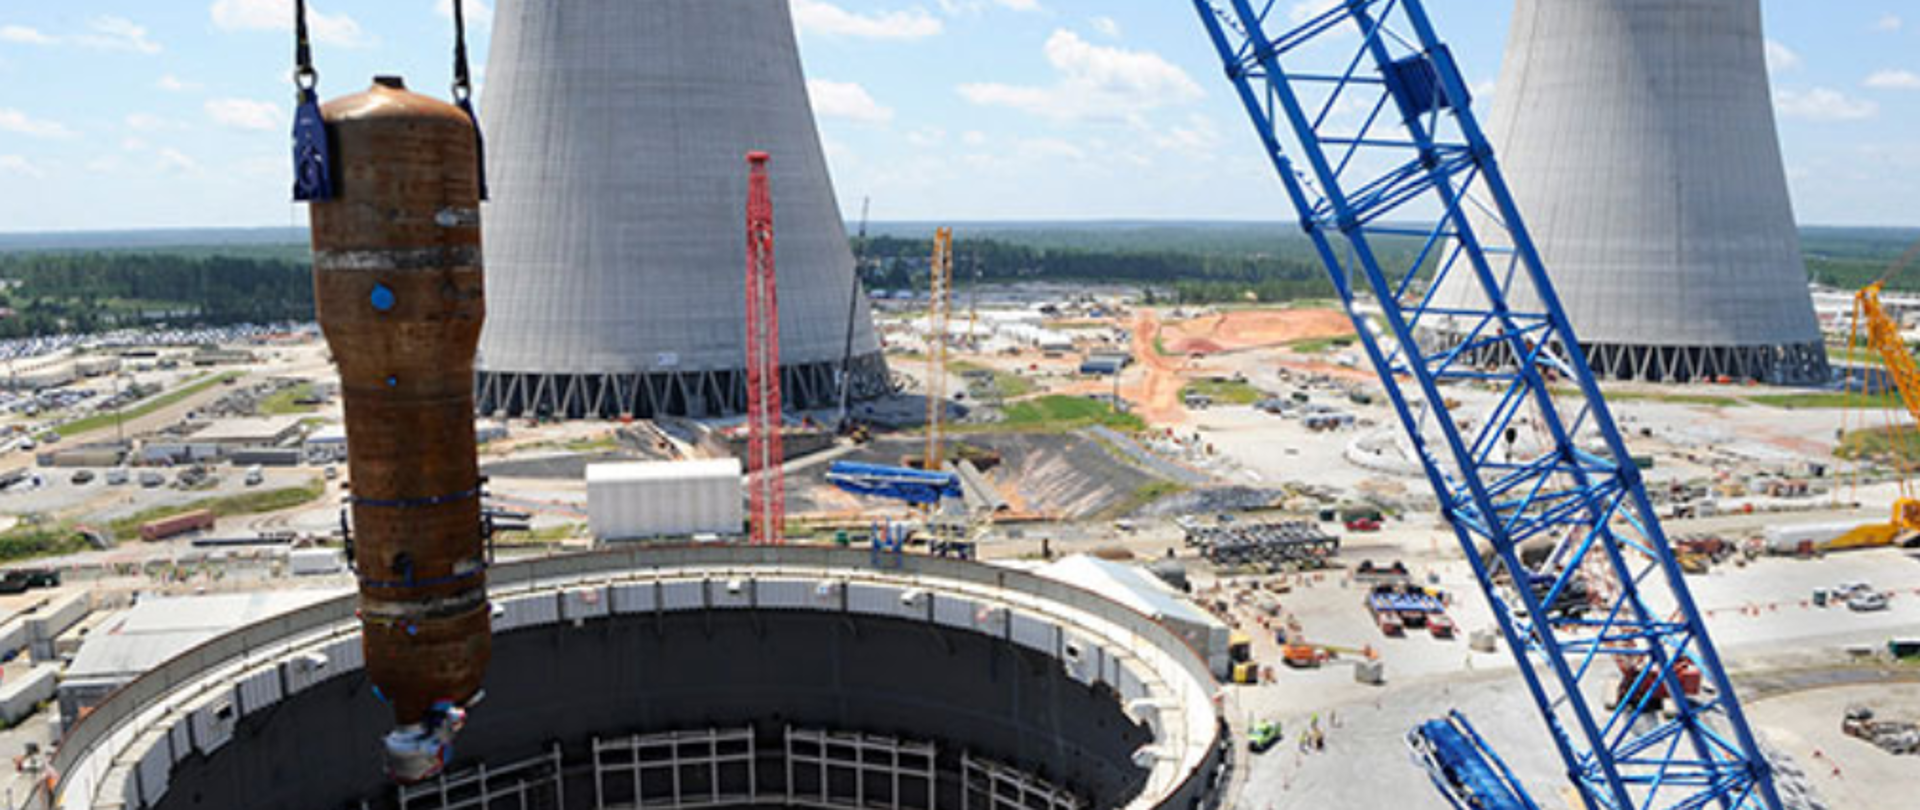 Budowa elektrowni jądrowej Vogtle 3 i 4. Niebieskie ramię dźwigu umieszcza element w budynku reaktora jądrowego. Obok plac budowy - maszyny budowlane. W tle dwa, szare kominy chłodzące i zielony las.